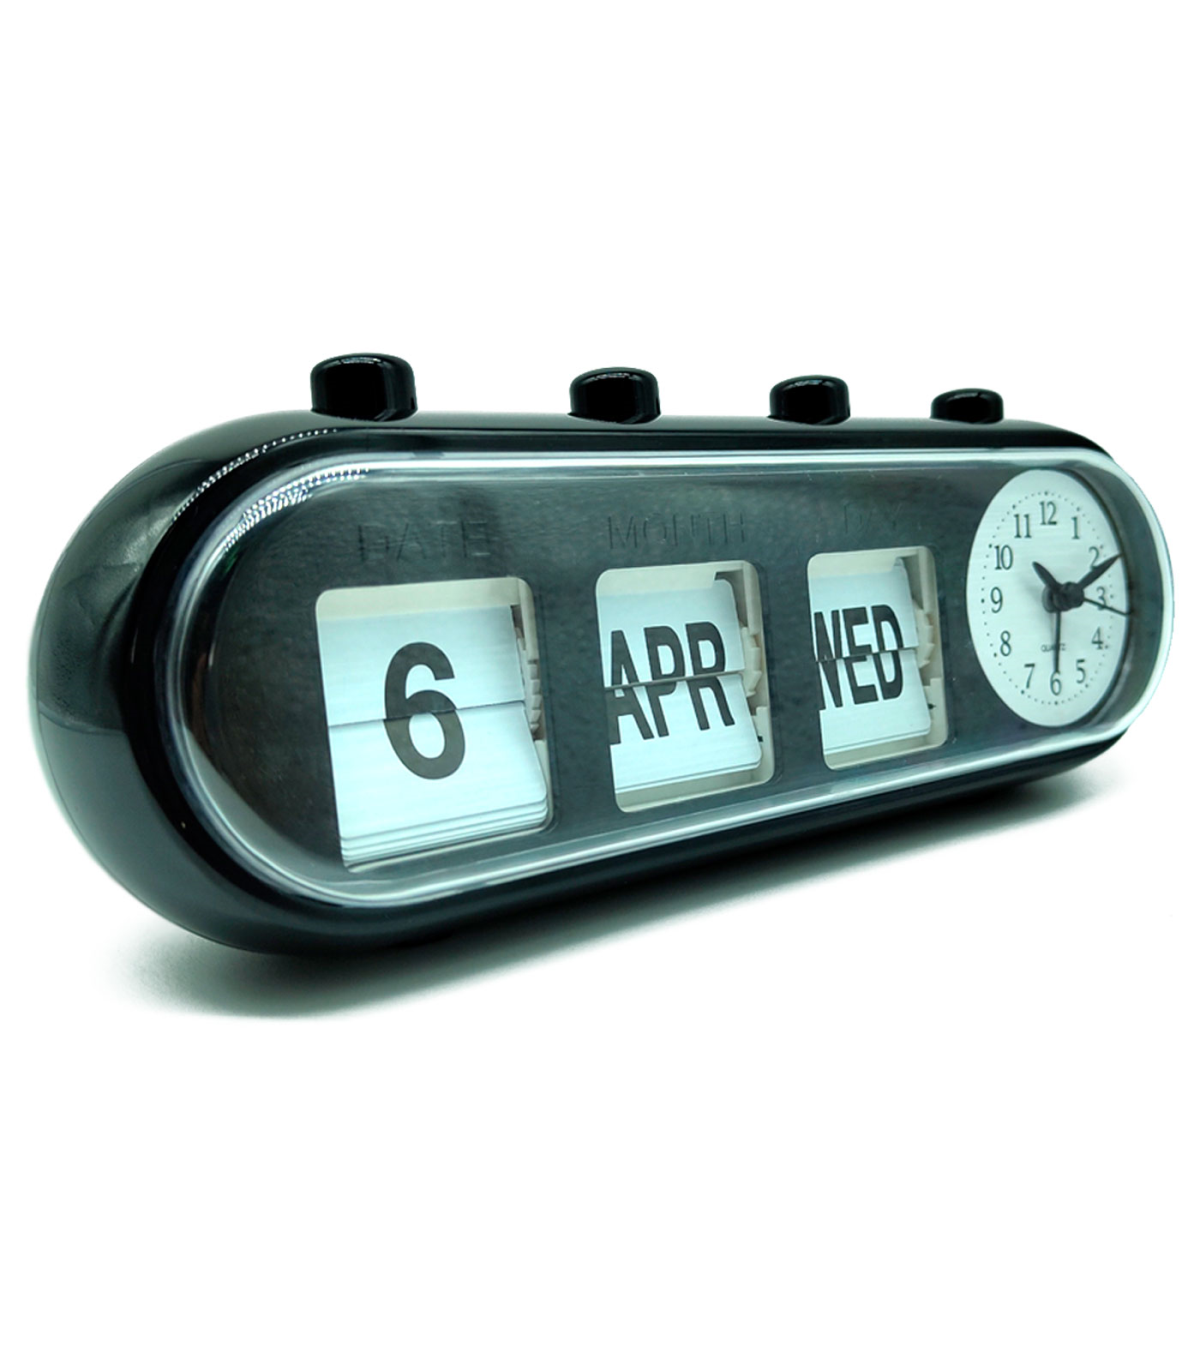 Reloj despertador analógico, retroiluminación retro, bonito diseño